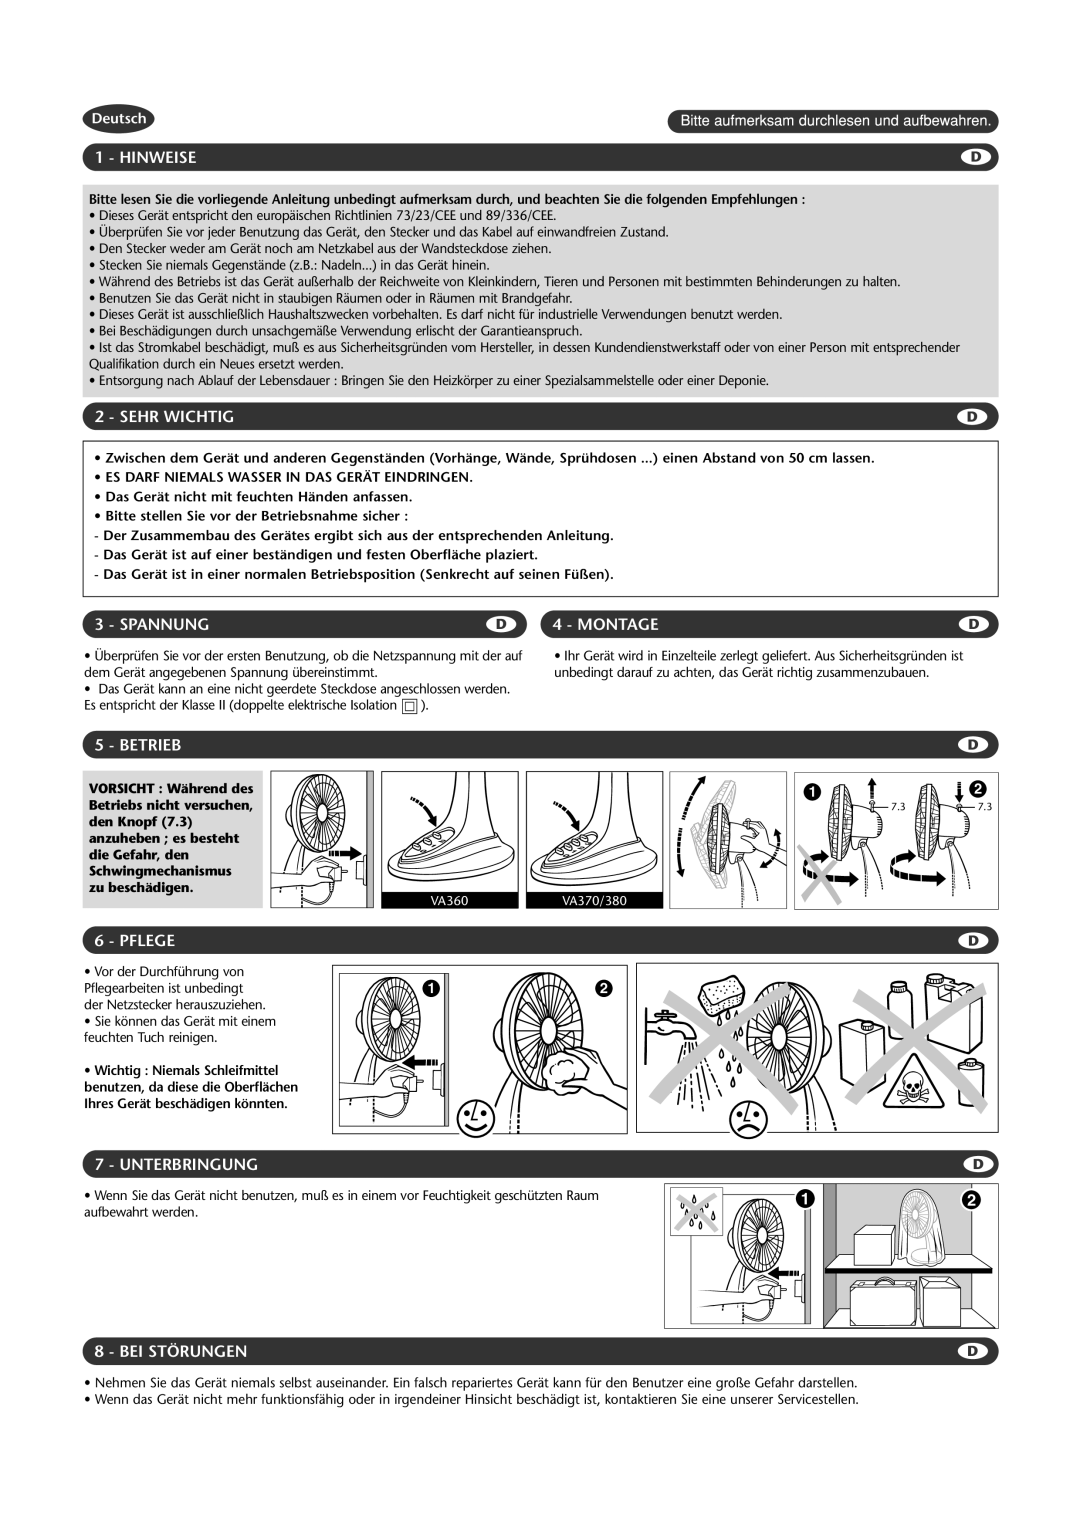 Rowenta VA360 manual Hinweise, Sehr Wichtig, Spannung, Montage, Betrieb, Pflege, Unterbringung, Bei Störungen, Deutsch 